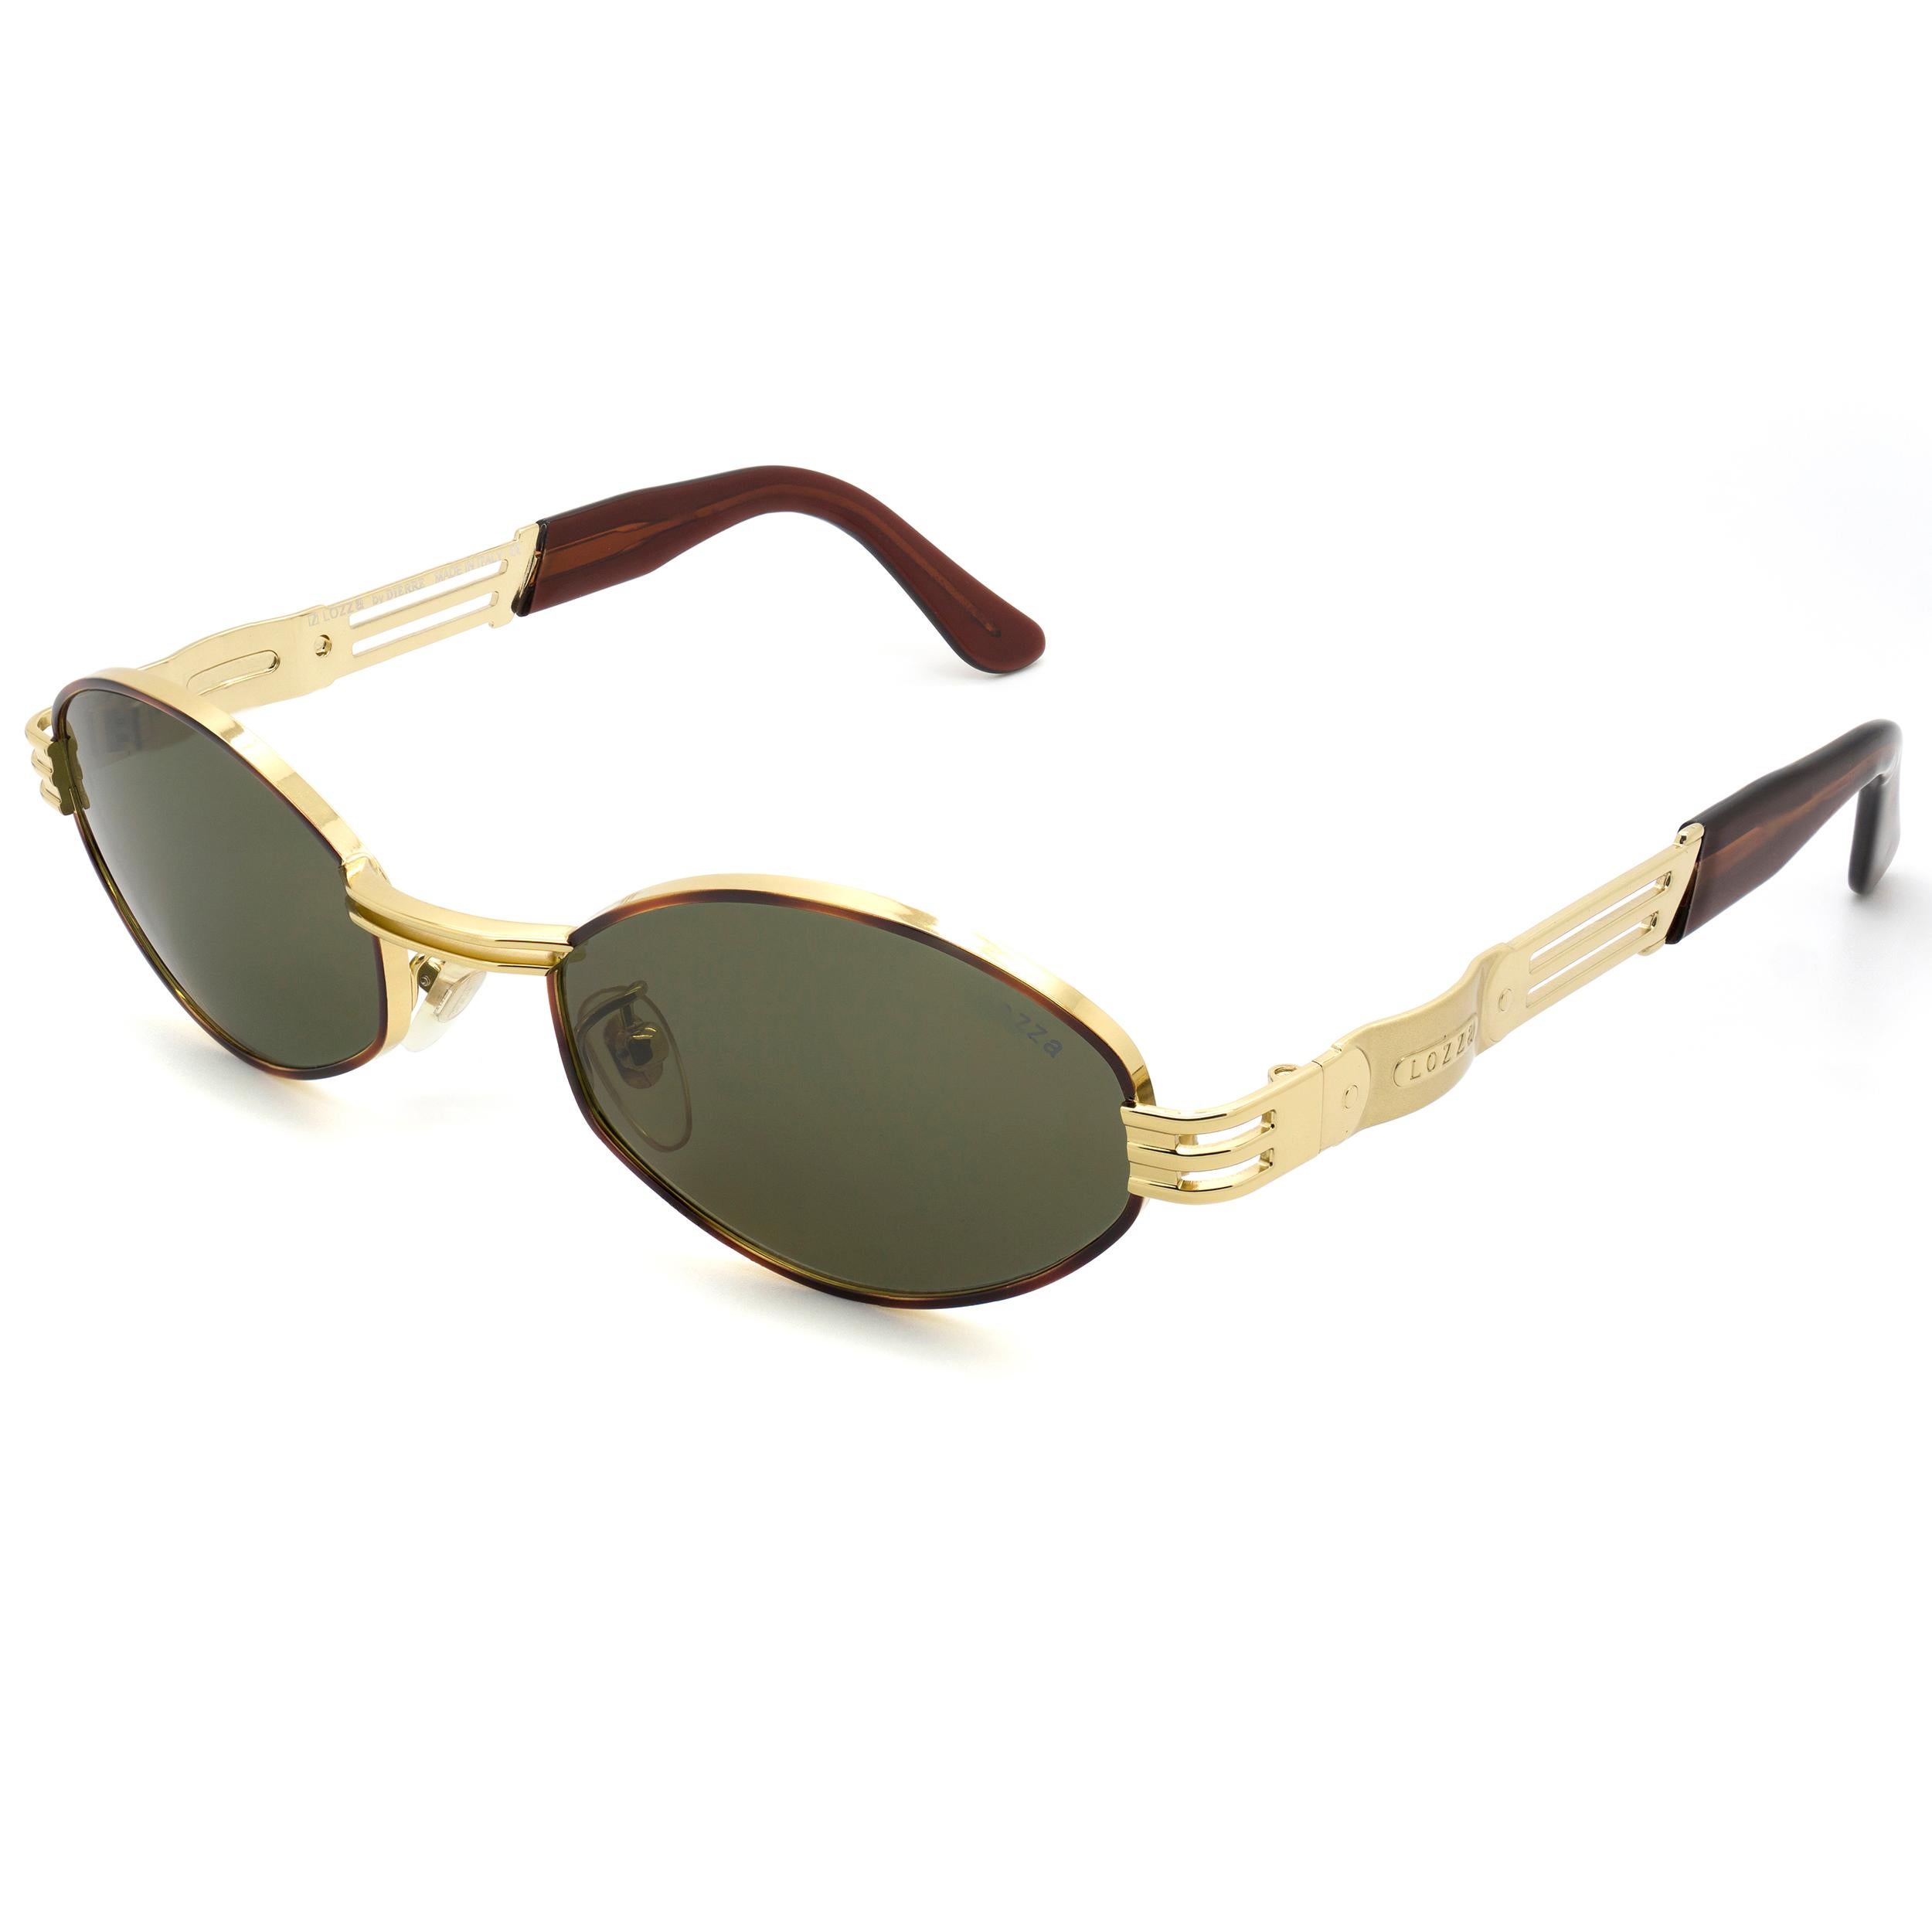 Lozza est la plus ancienne marque de lunettes d'Italie, fondée en 1878, toujours précurseur dans le choix des styles et des matériaux : dans les années 20, elle a lancé les premières lunettes de soleil en cellulose et dans les années 30, les